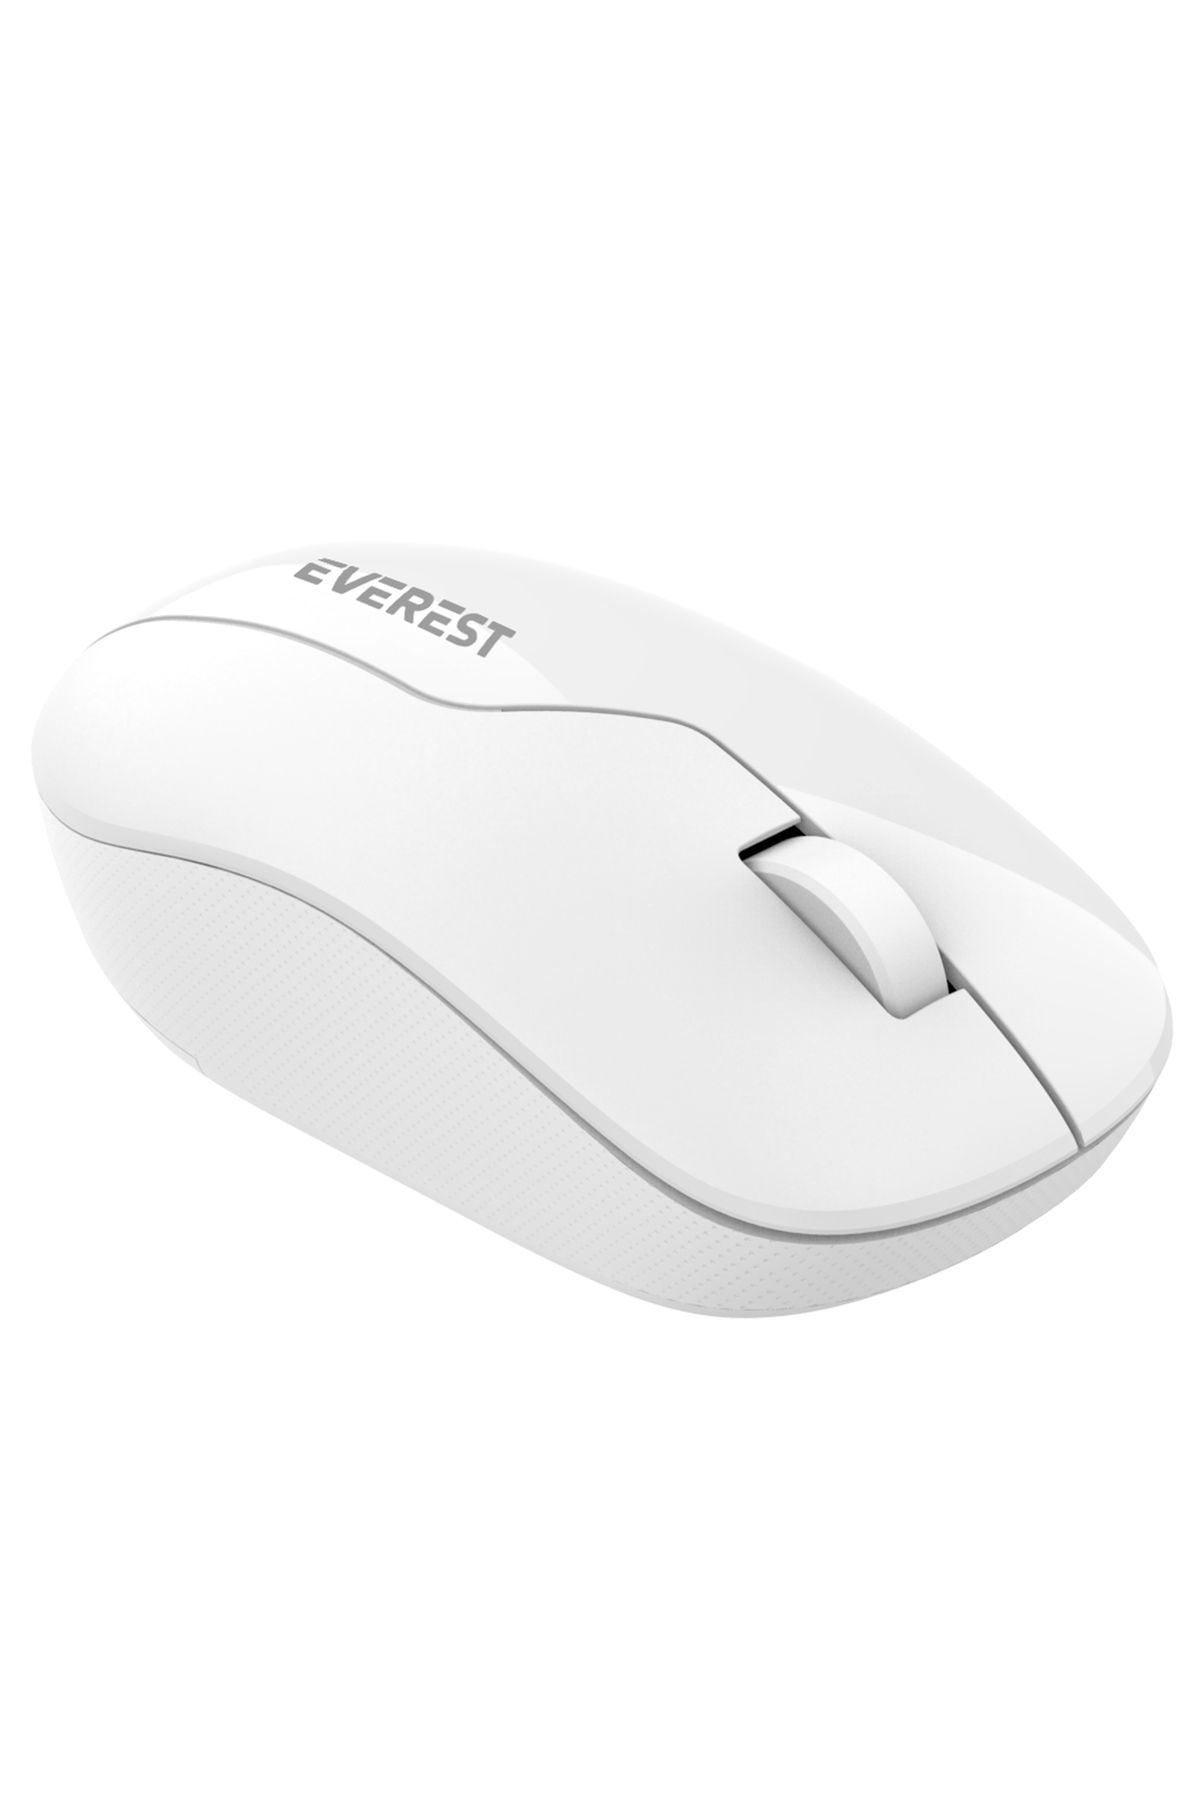 Everest SMW-973 Usb Beyaz 2.4Ghz Kablosuz Mouse